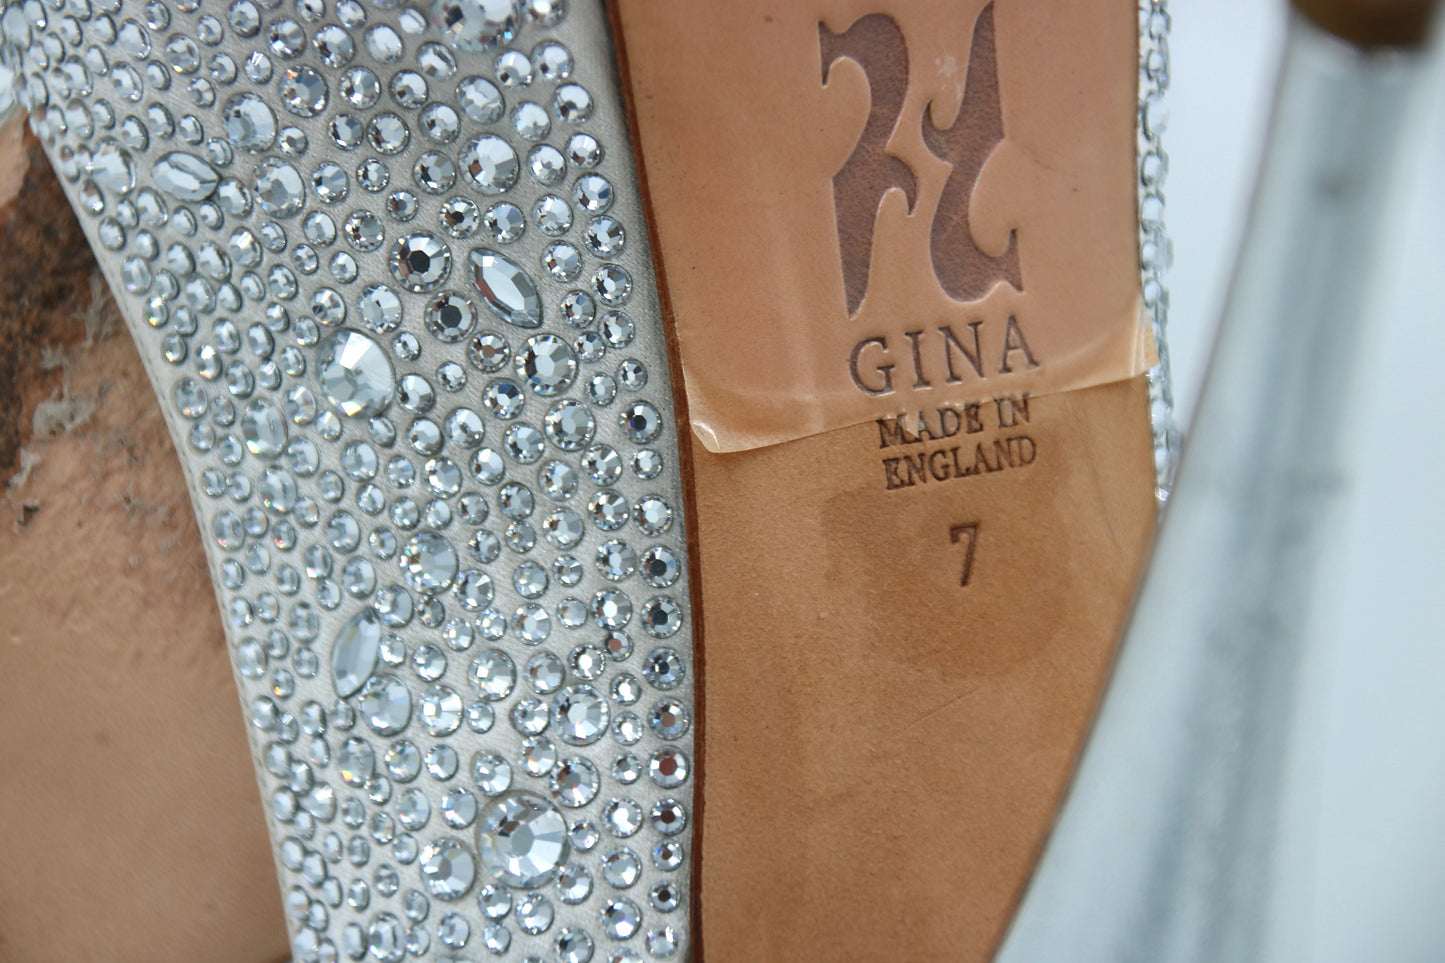 GINA Silver Satin Crystal Embellished Peep Toe Platform Slingback Sandals